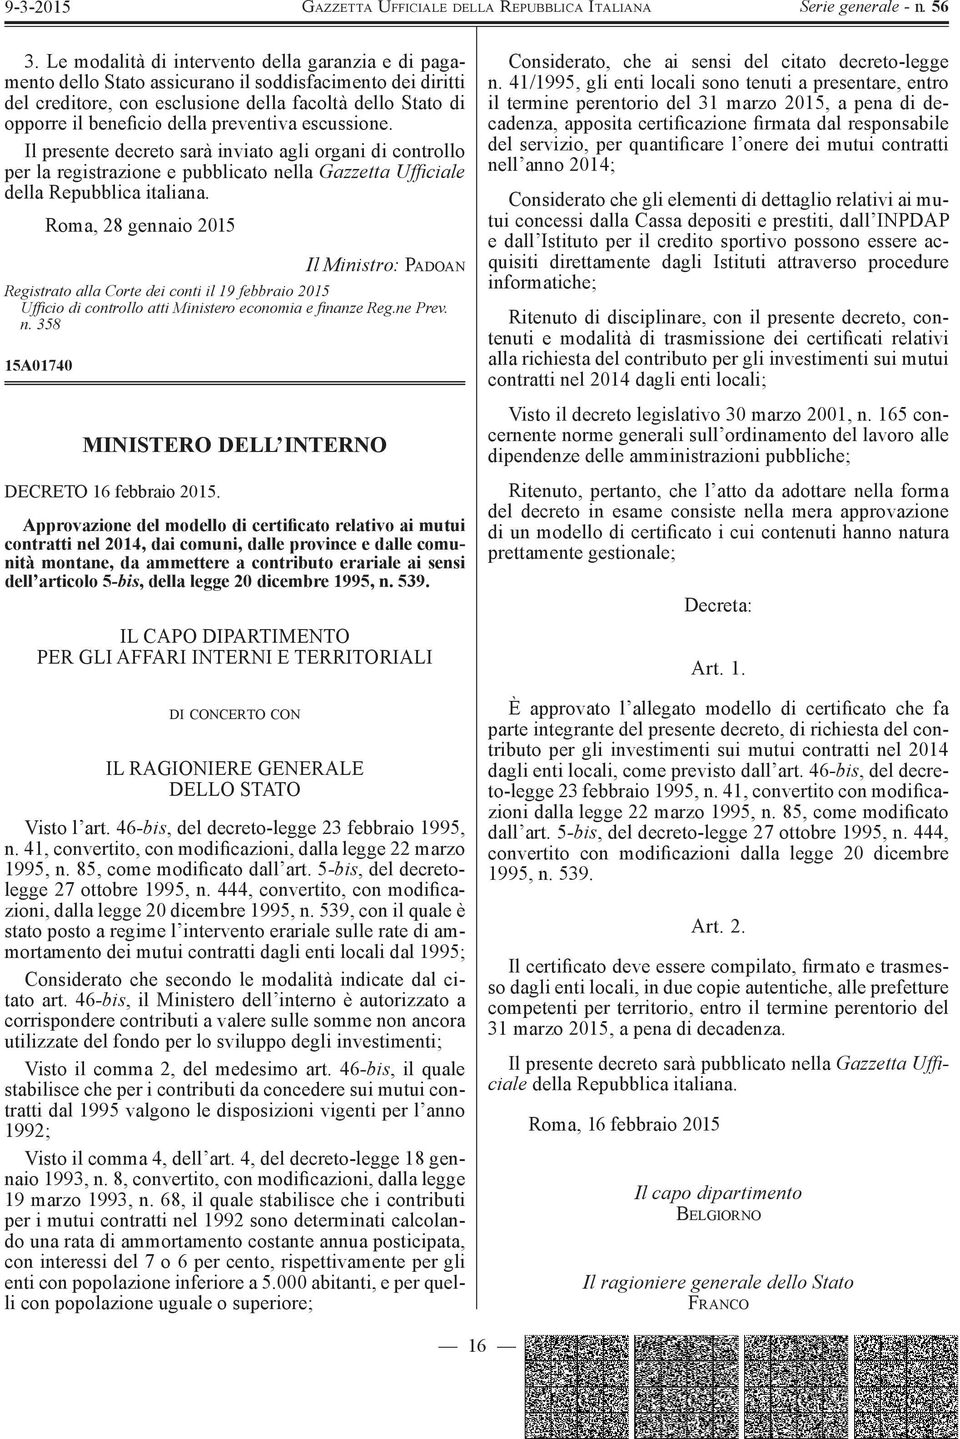 Roma, 28 gennaio 2015 Il Ministro: PADOAN Registrato alla orte dei conti il 19 febbraio 2015 Uffi cio di controllo atti Ministero economia e fi na